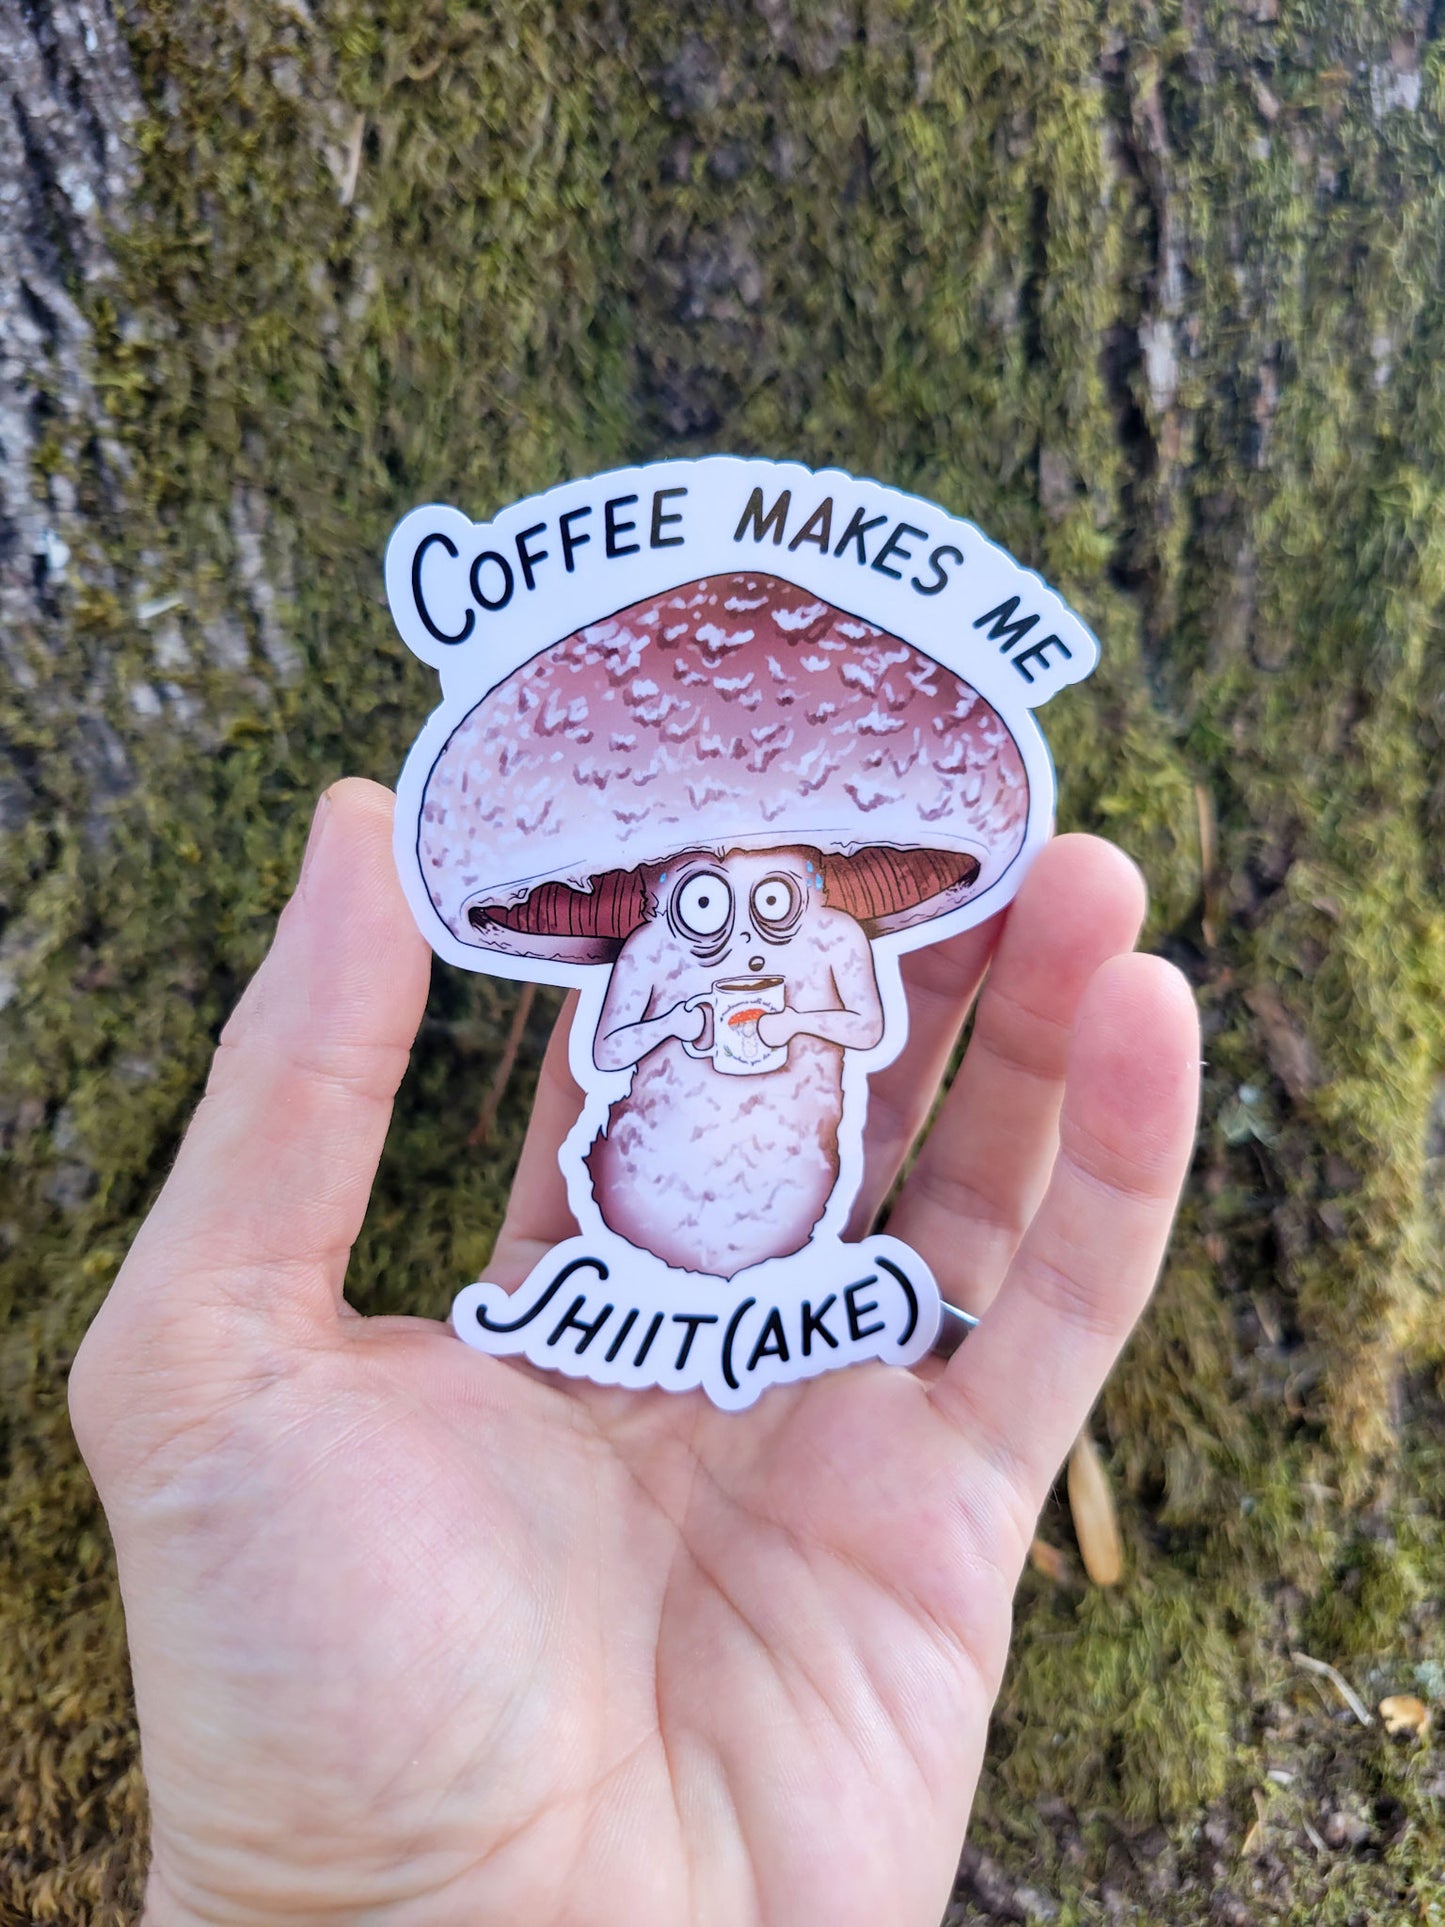 Coffee Makes Me Shiit(ake) | Funny Shiitake Mushroom Coffee Sticker